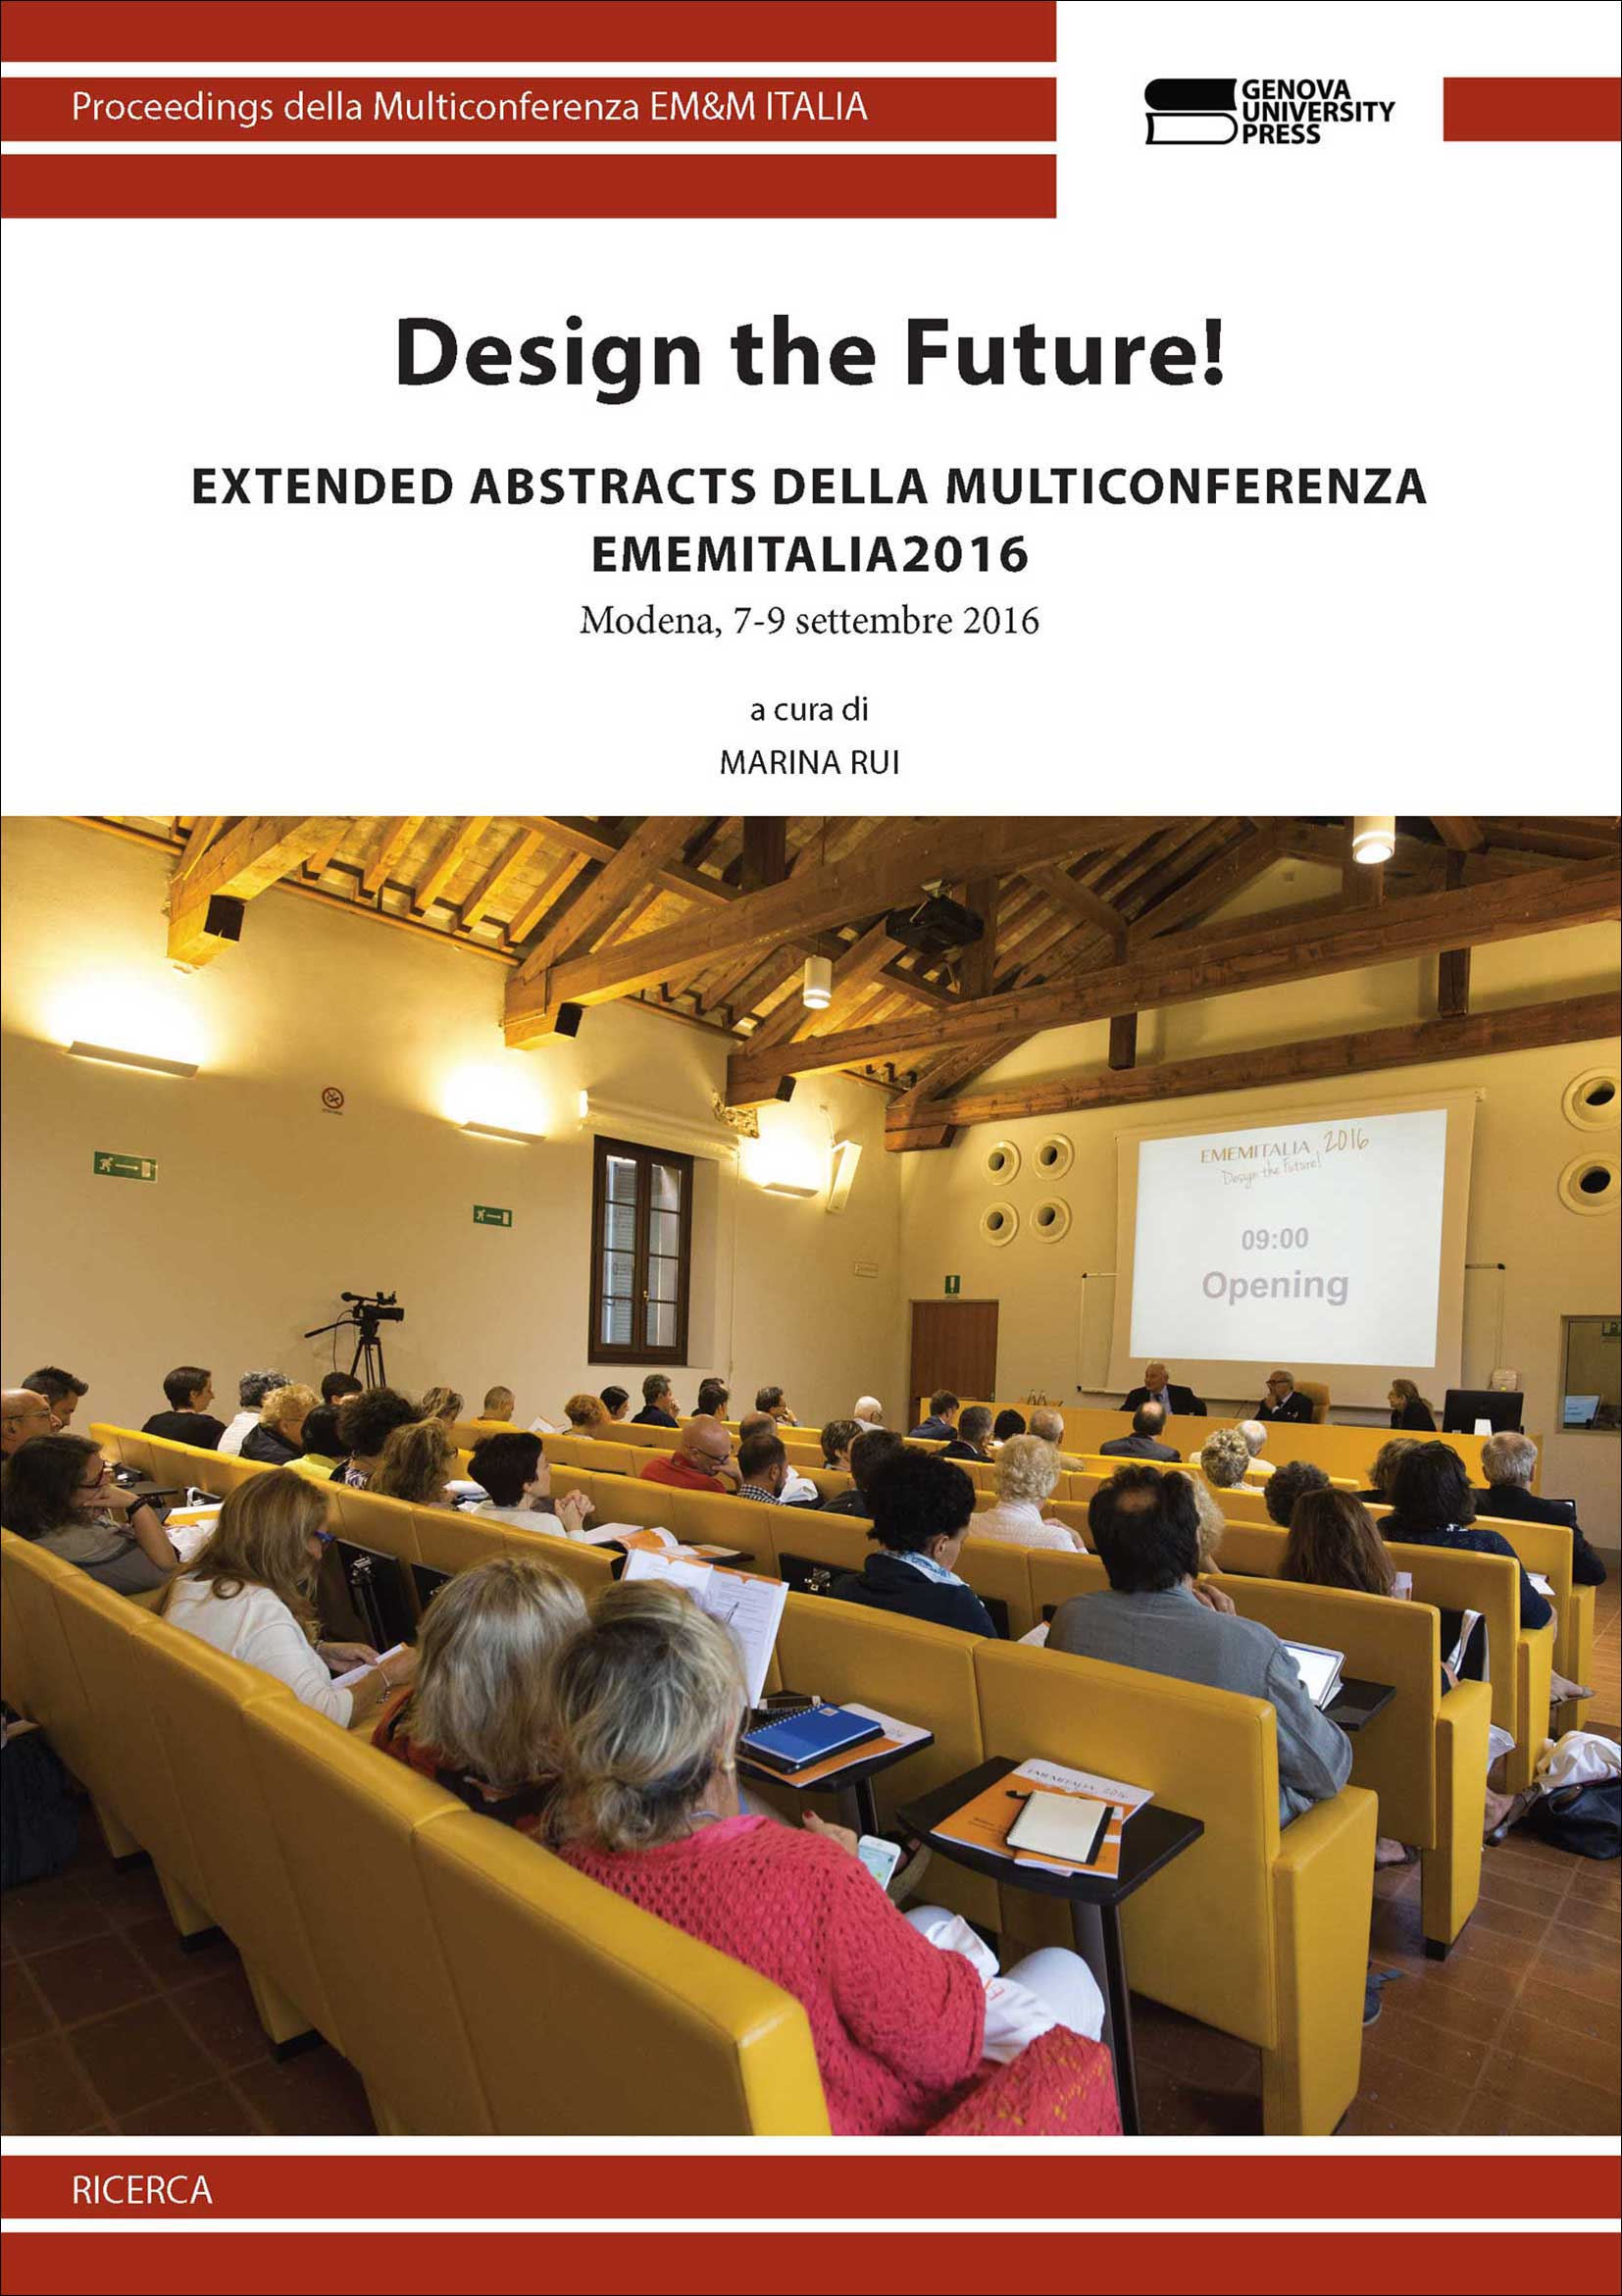 Design the Future! (extended abstracts della multiconferenza EMEMITALIA 2016)